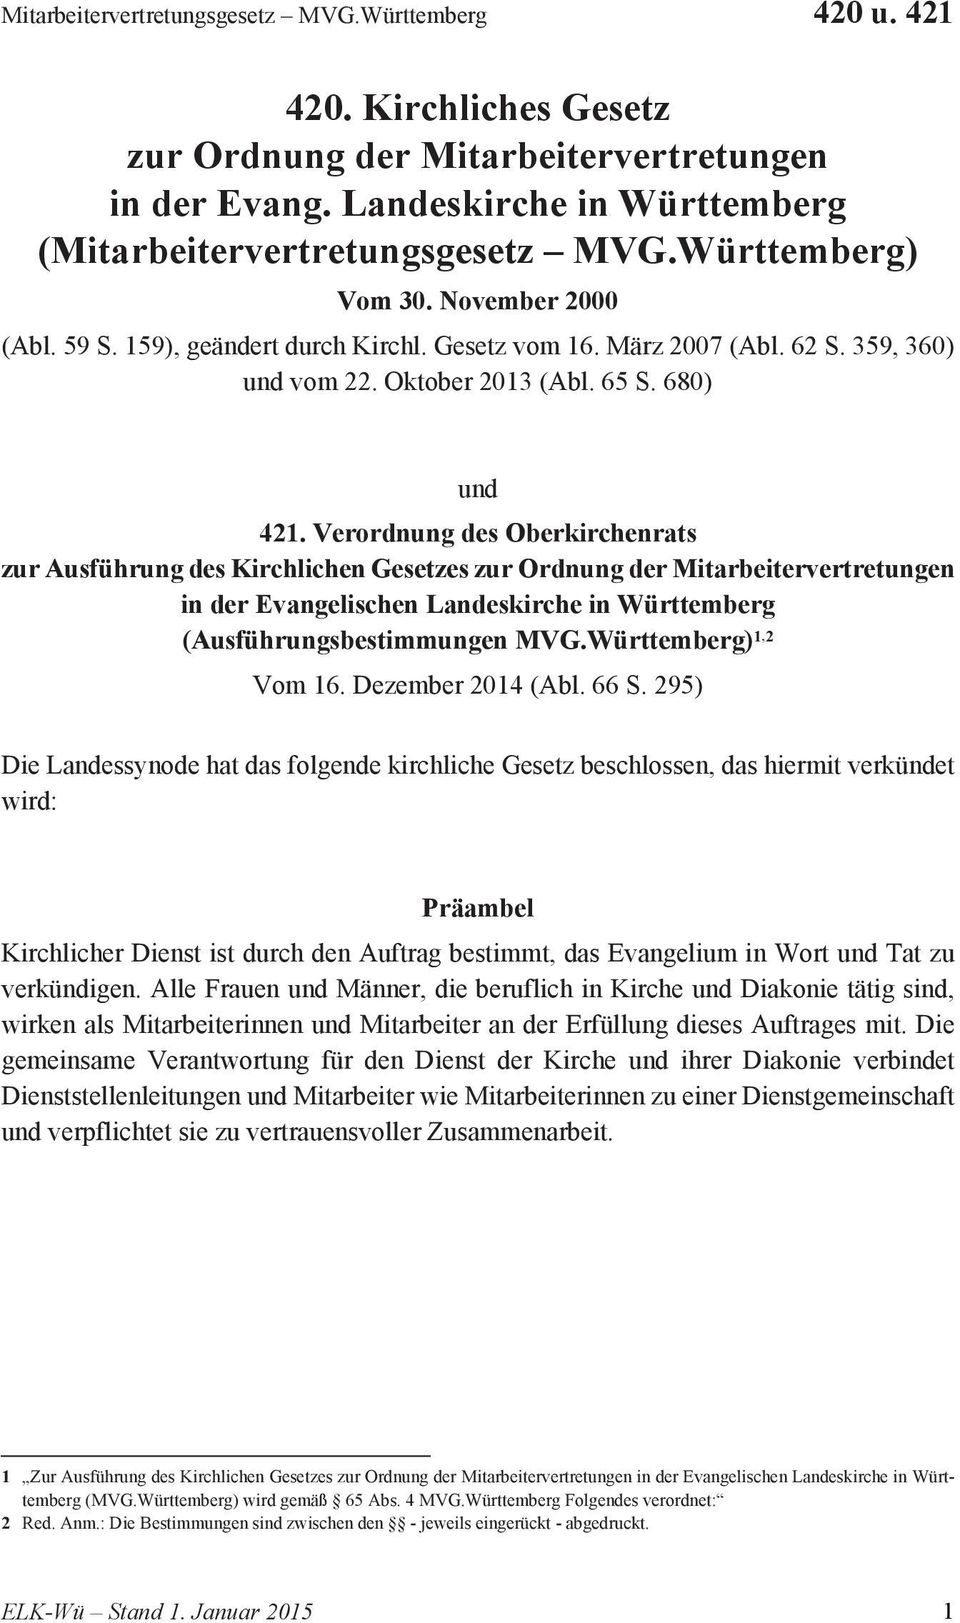 Verordnung des Oberkirchenrats zur Ausführung des Kirchlichen Gesetzes zur Ordnung der Mitarbeitervertretungen in der Evangelischen Landeskirche in Württemberg (Ausführungsbestimmungen MVG.